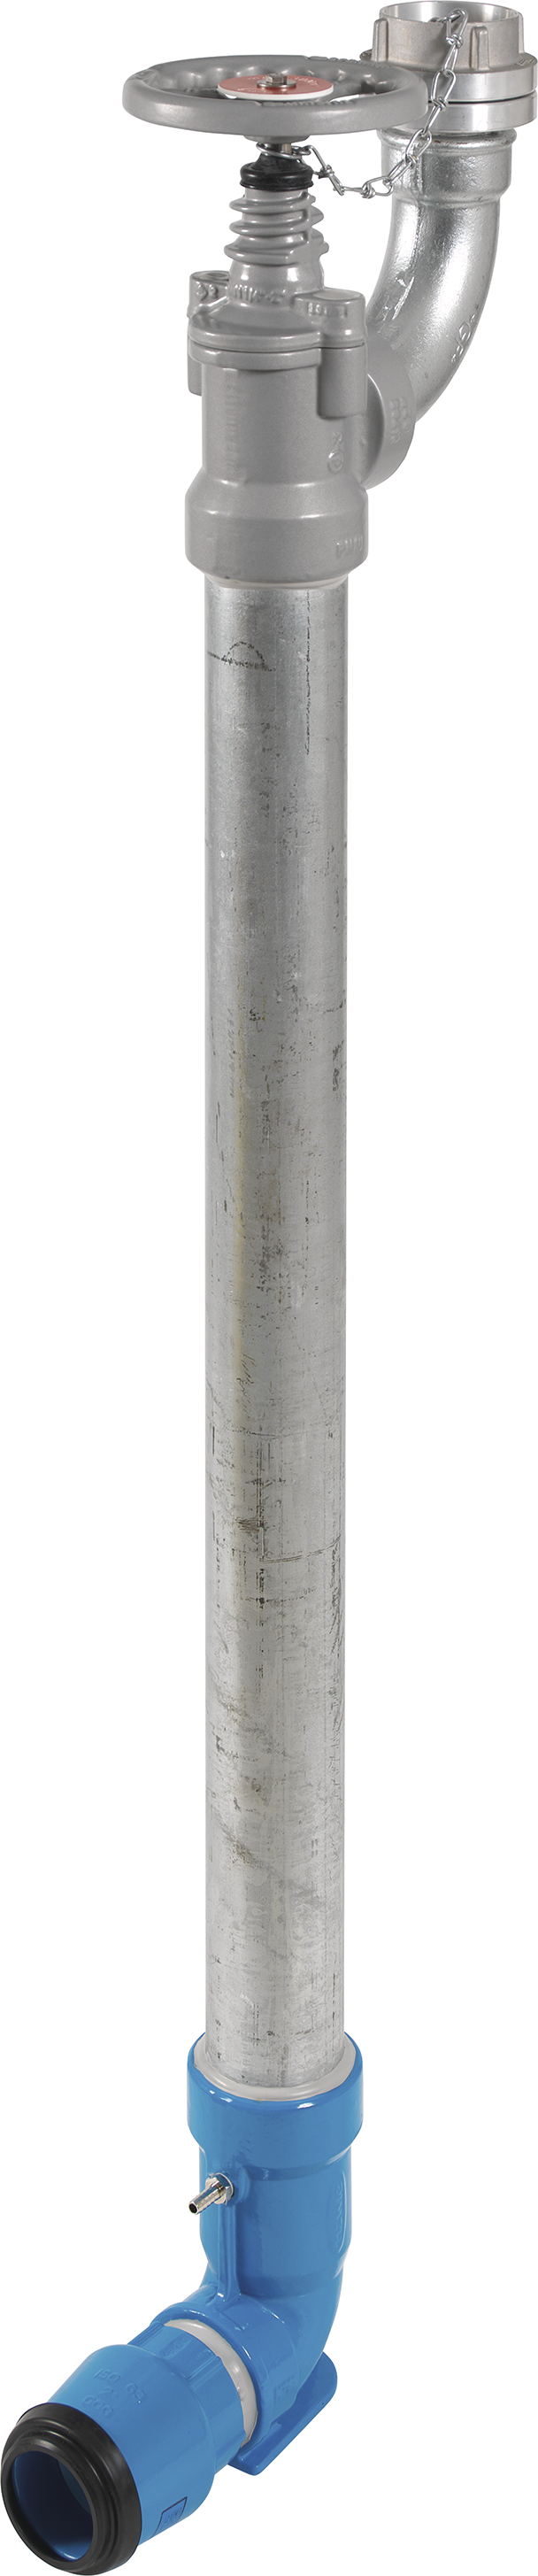 Bewässerungshydrant Unterflur N767 d 63mm, L = 1500mm - Hawle Hydranten